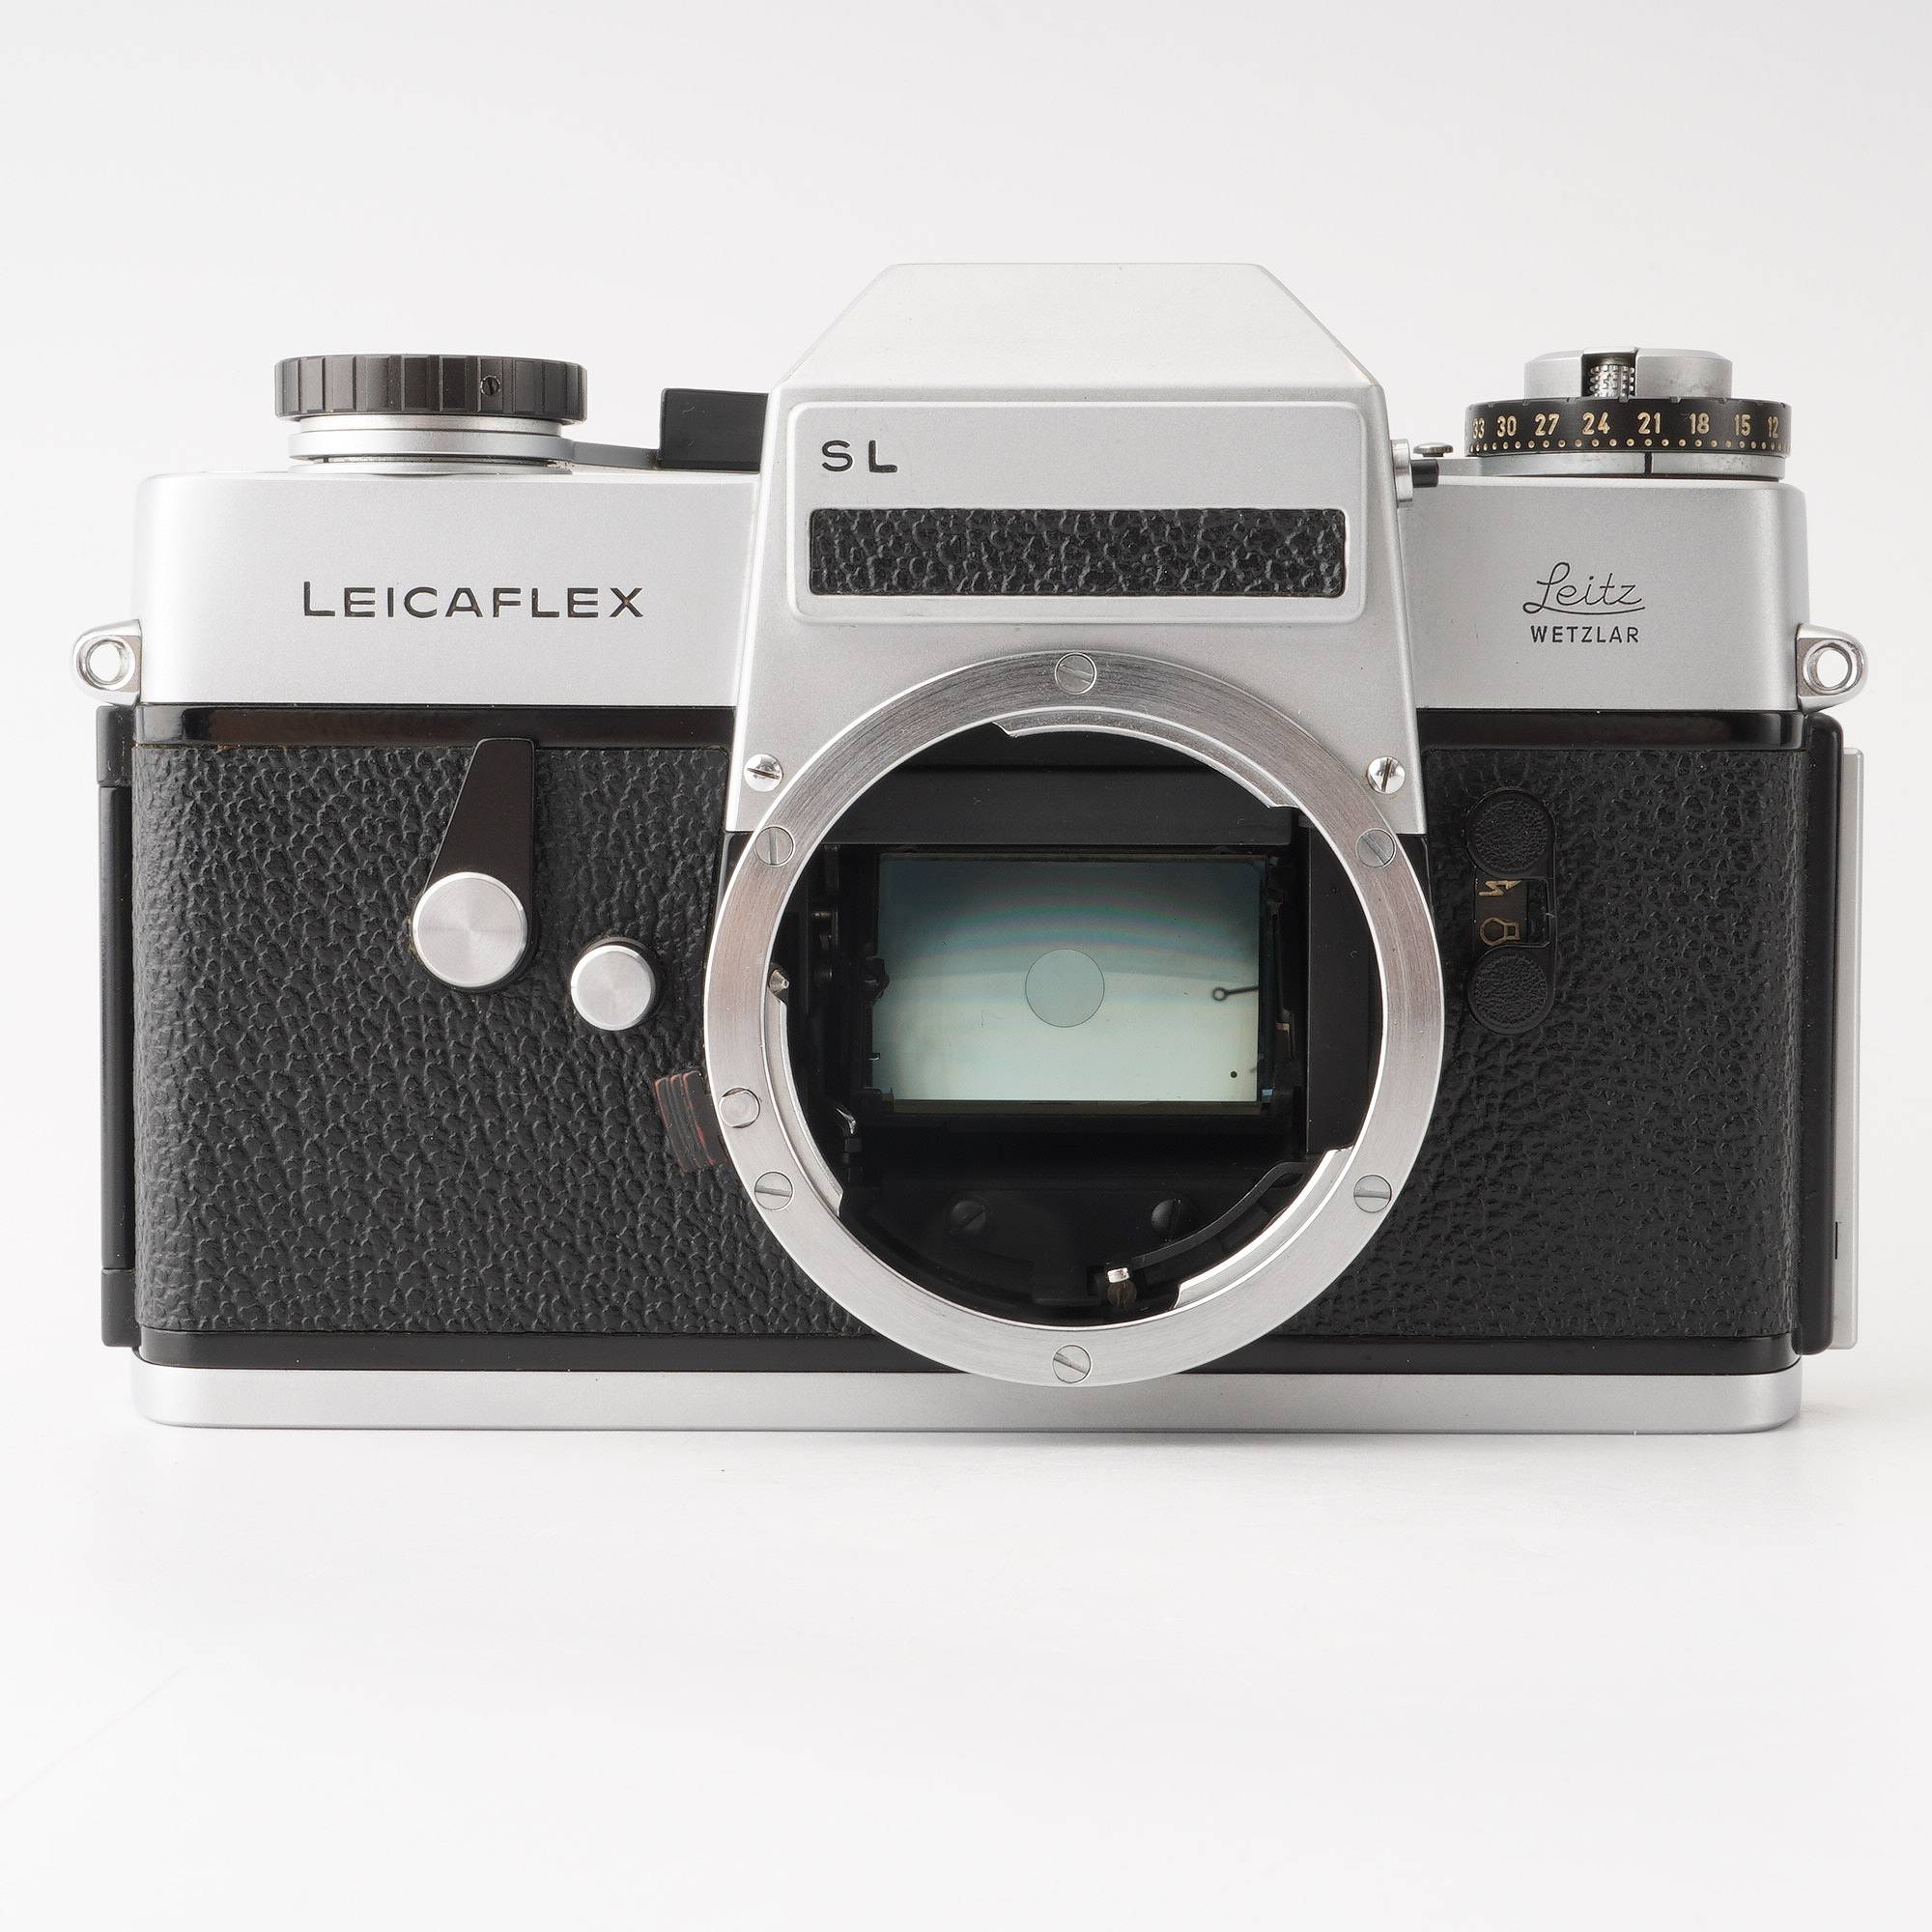 フィルム一眼レフカメラ Leicaflex SL-